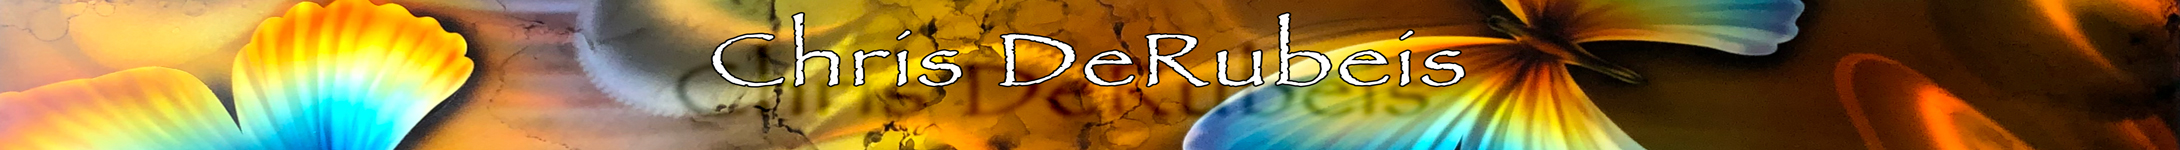 DeRubeis New Release